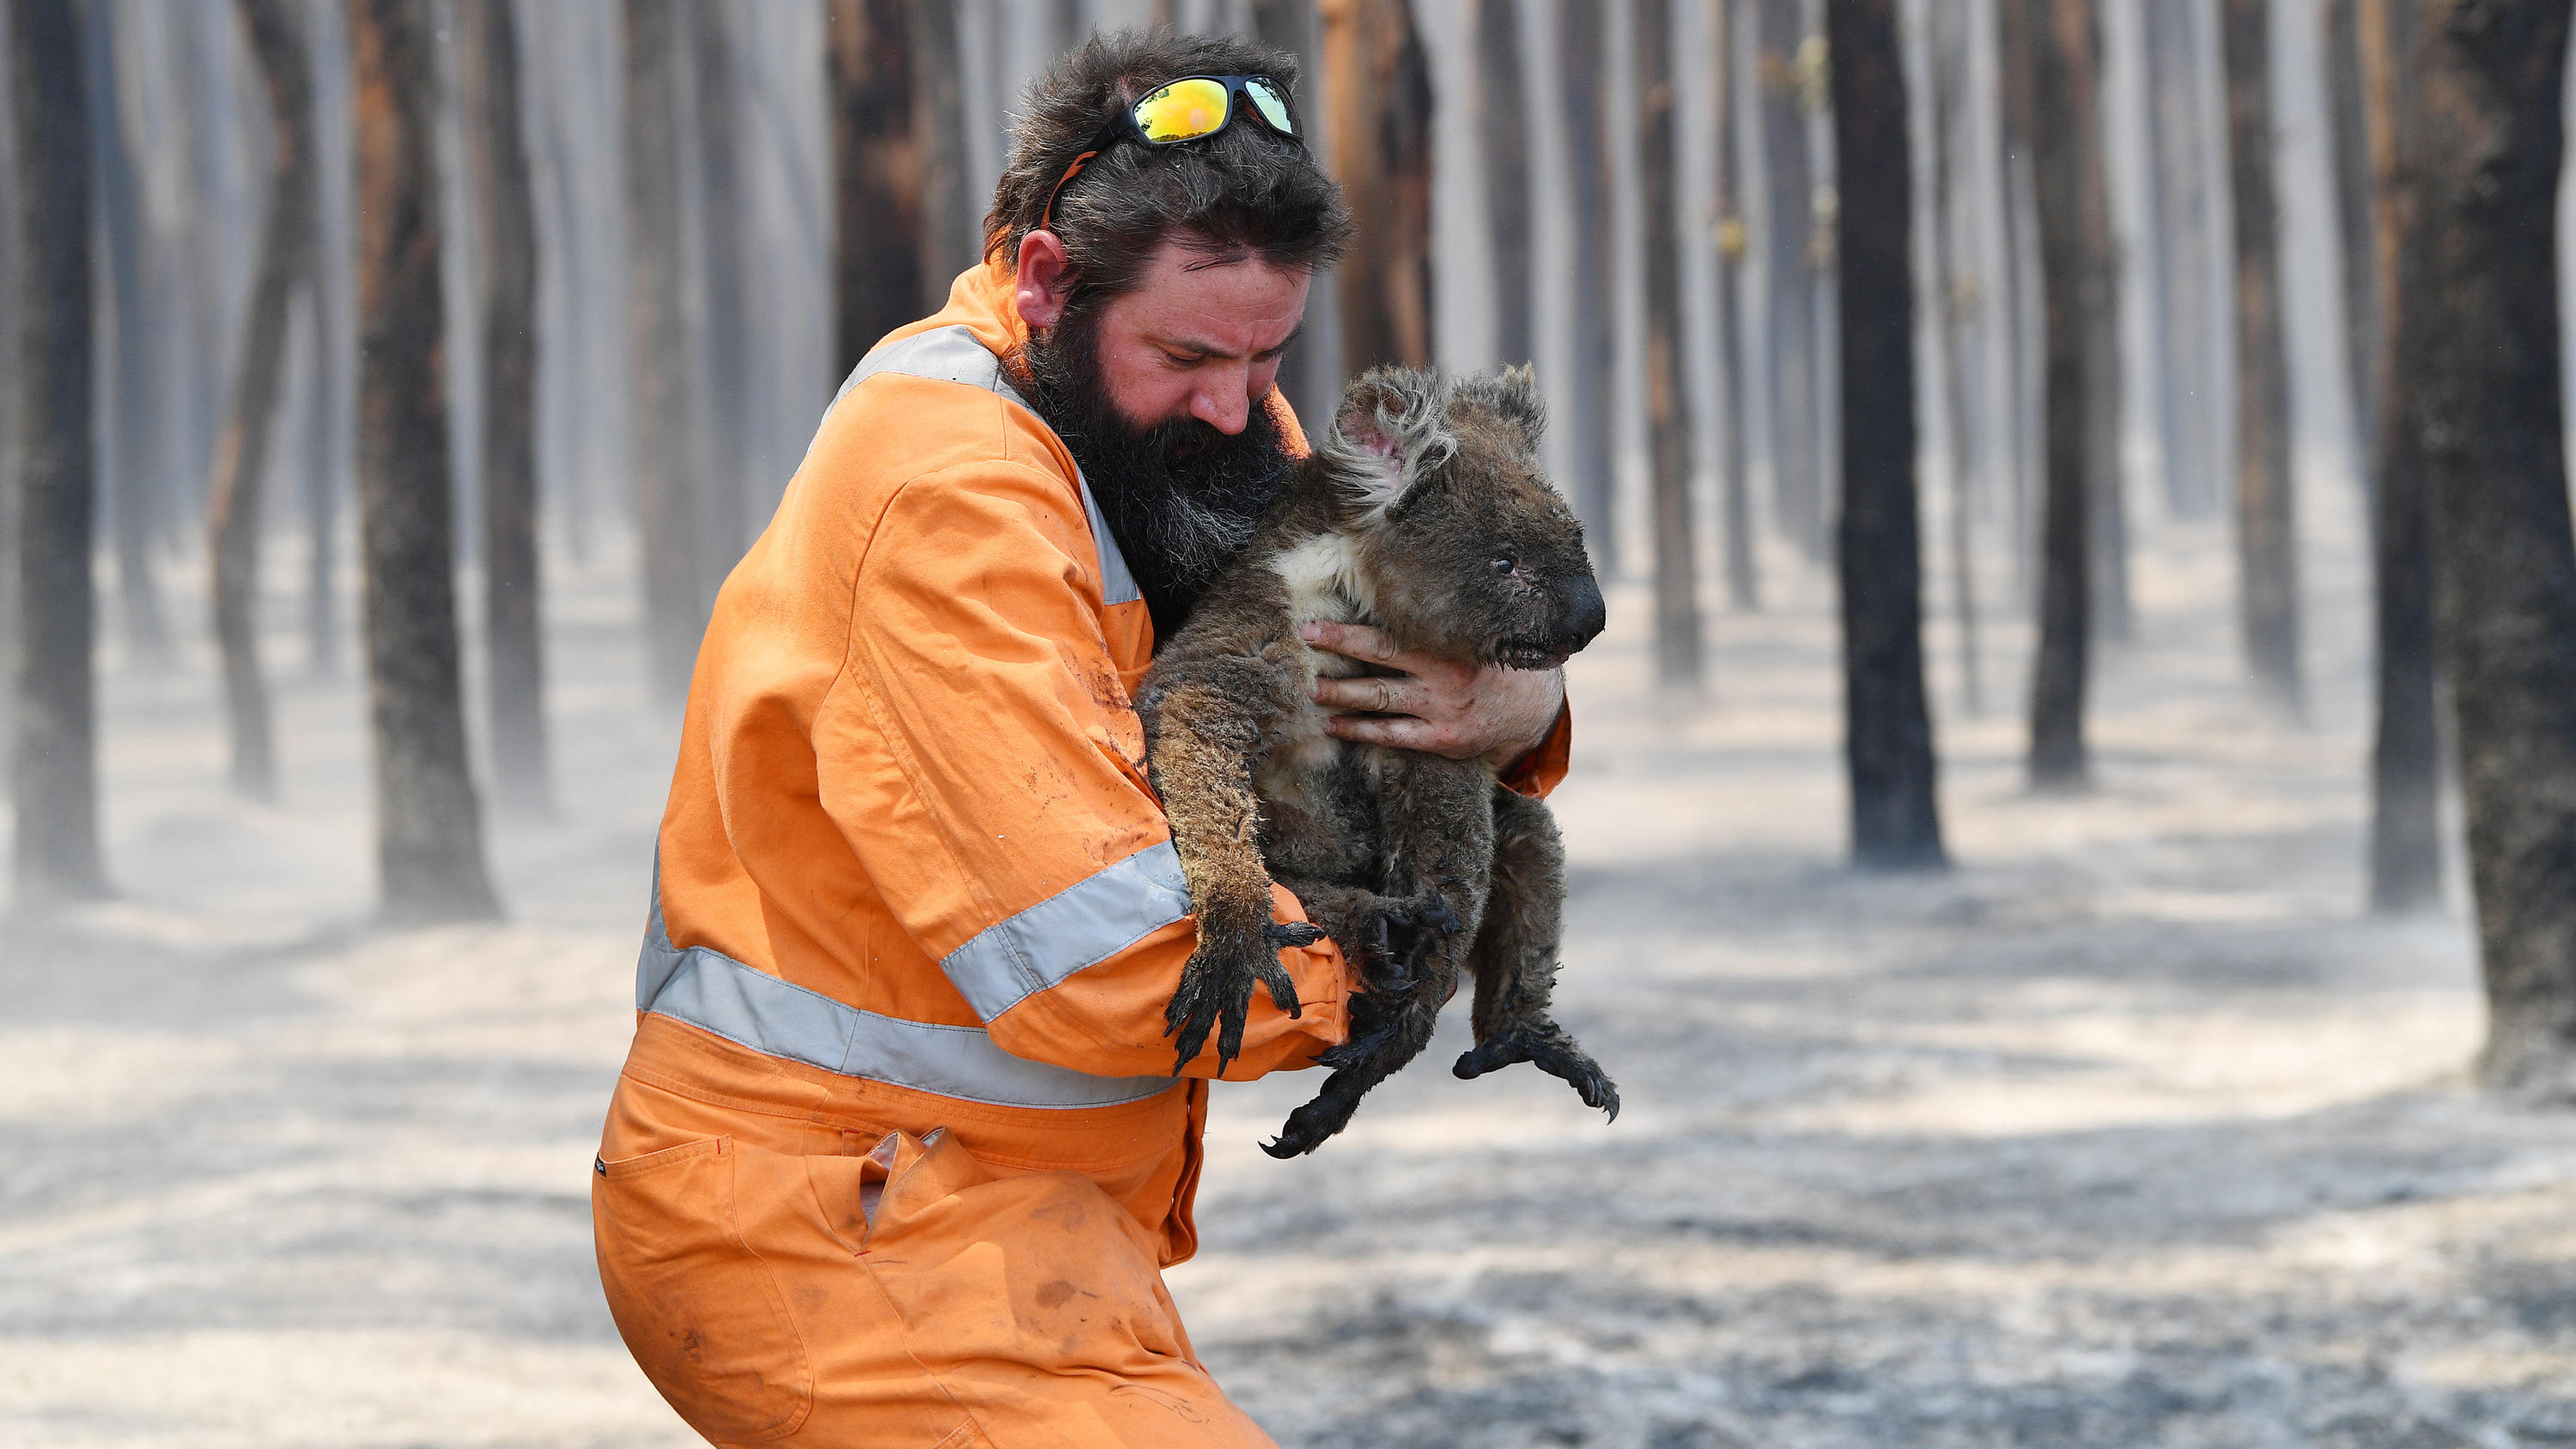 07.01.2020, Australien, Kangaroo Island: Wildtierretter Simon Adamczyk trägt einen Koala aus einem brennenden Wald in der Nähe von Cape Borda auf Kangaroo Island, südwestlich von Adelaide. Auf Australiens drittgrößter Insel haben die Buschfeuer bereits eine 150 000 Hektar große Fläche verbrannt, wie der örtliche Regierungschef Marshall mitteilte. Foto: David Mariuz/AAP/dpa +++ dpa-Bildfunk +++